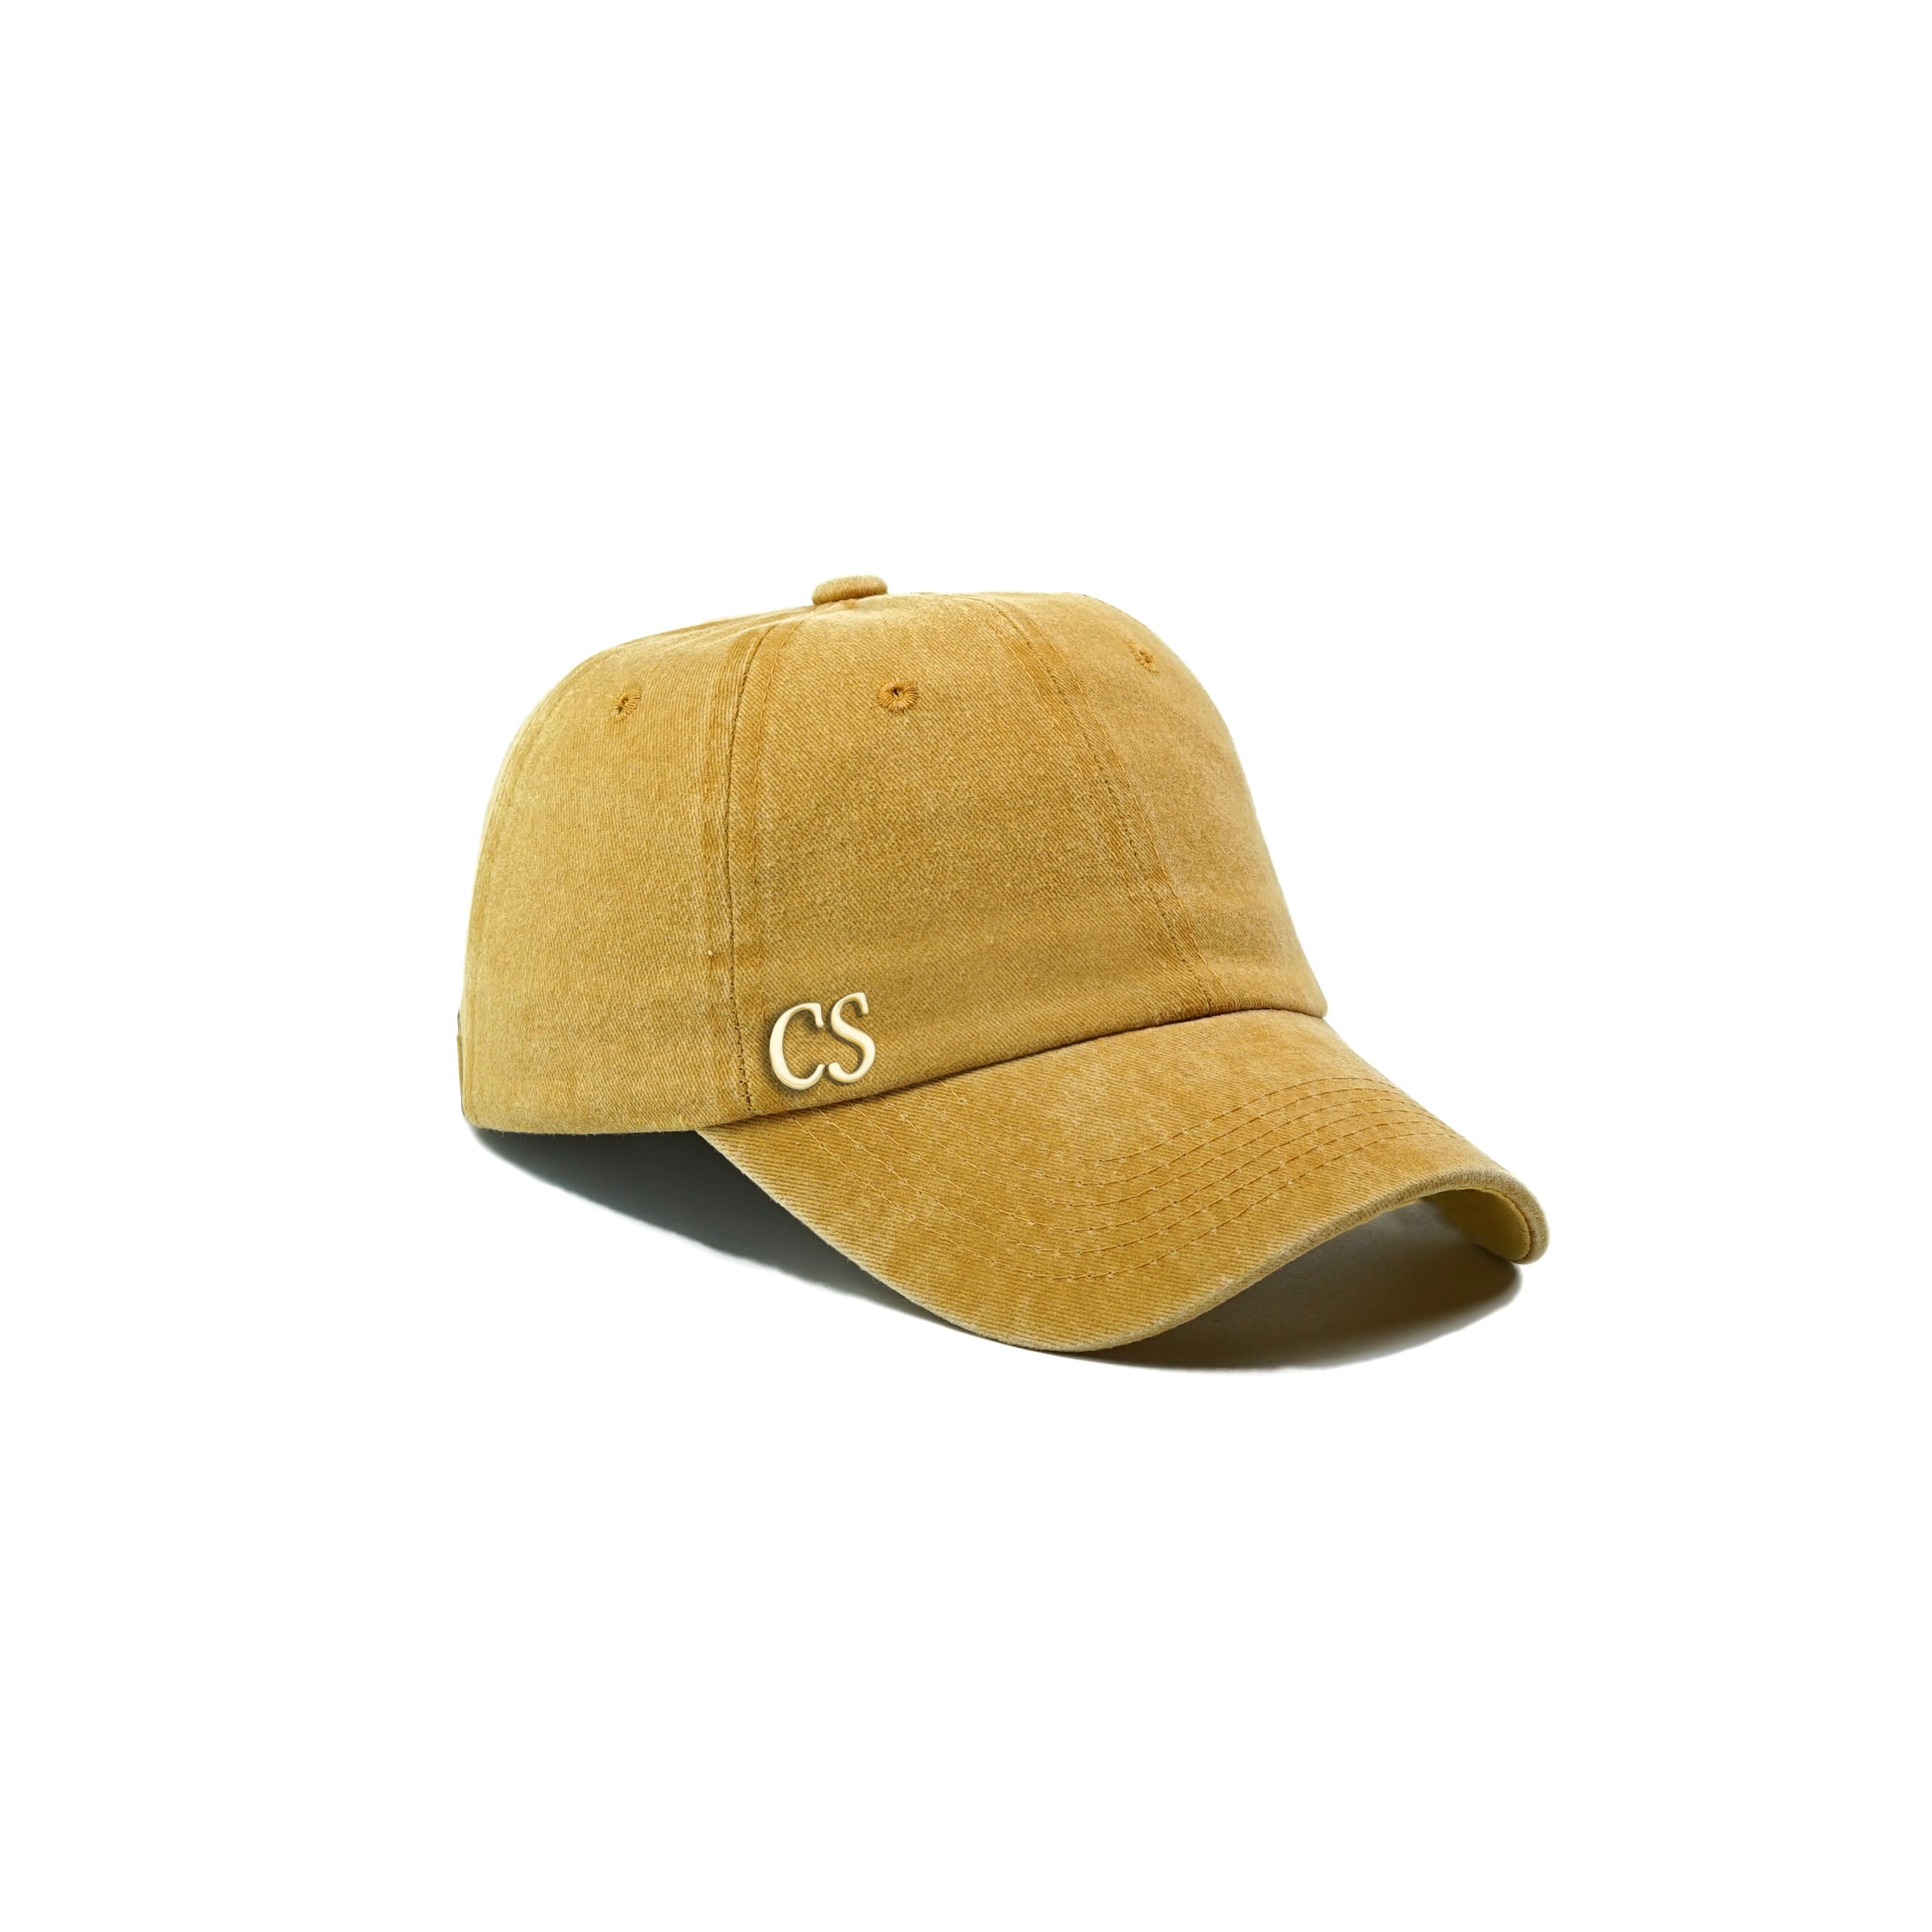 Twingold Kişiye Özel Yıkamalı Kep Şapka - Sarı